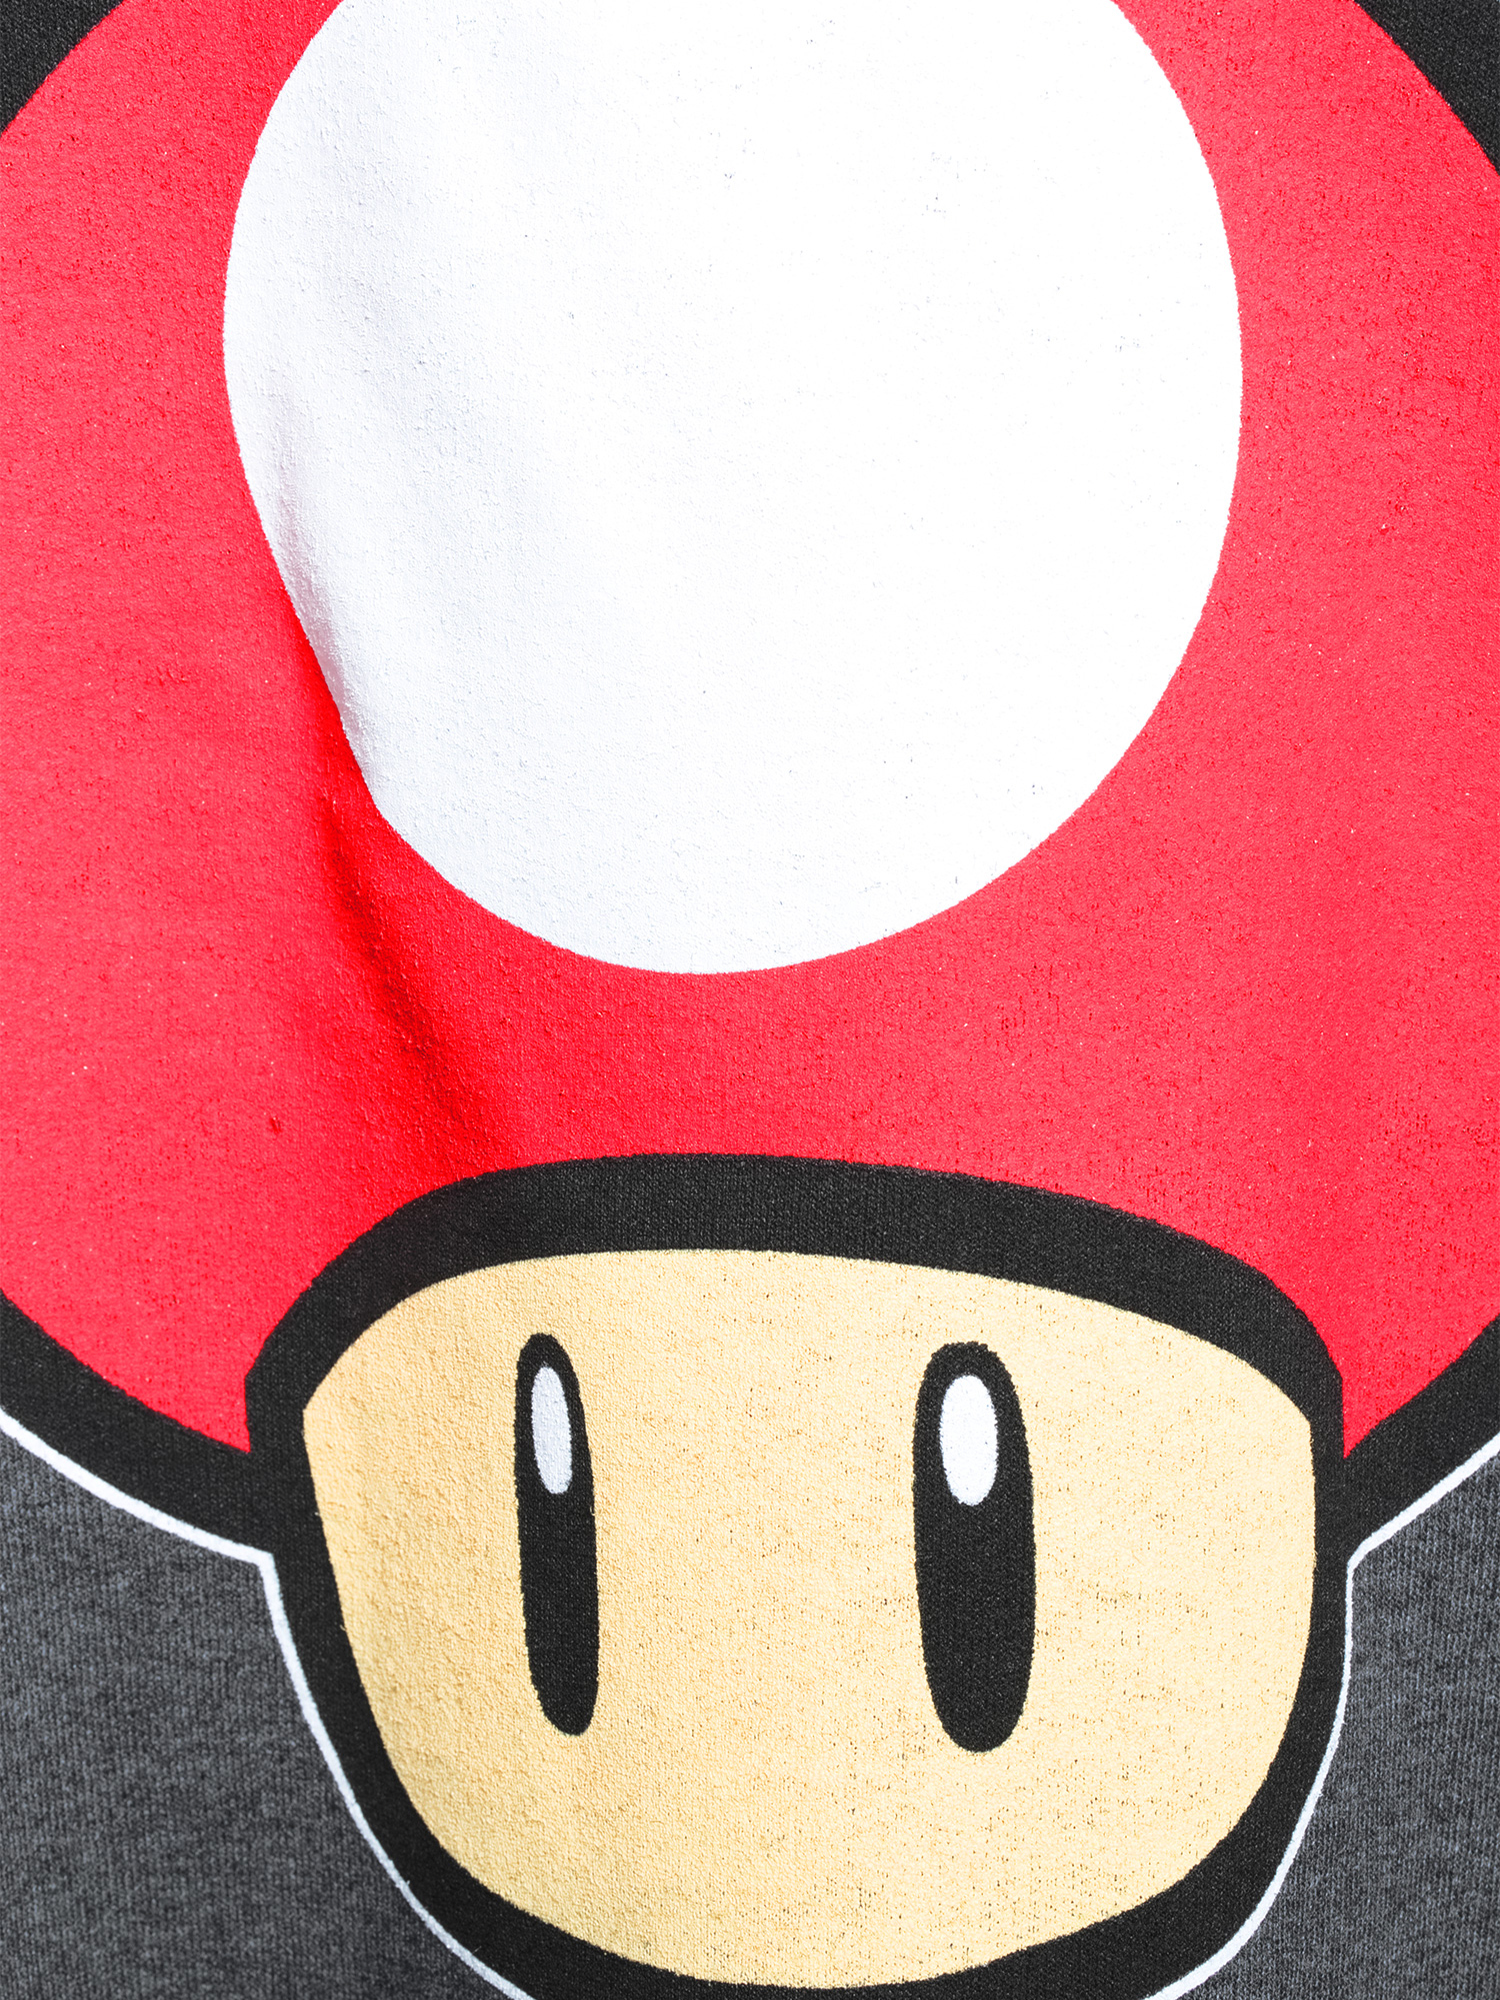 Nintendo Mario Kart Toad Power Up Men's and Big Men's Graphic Fleece Sweatshirt - image 5 of 6